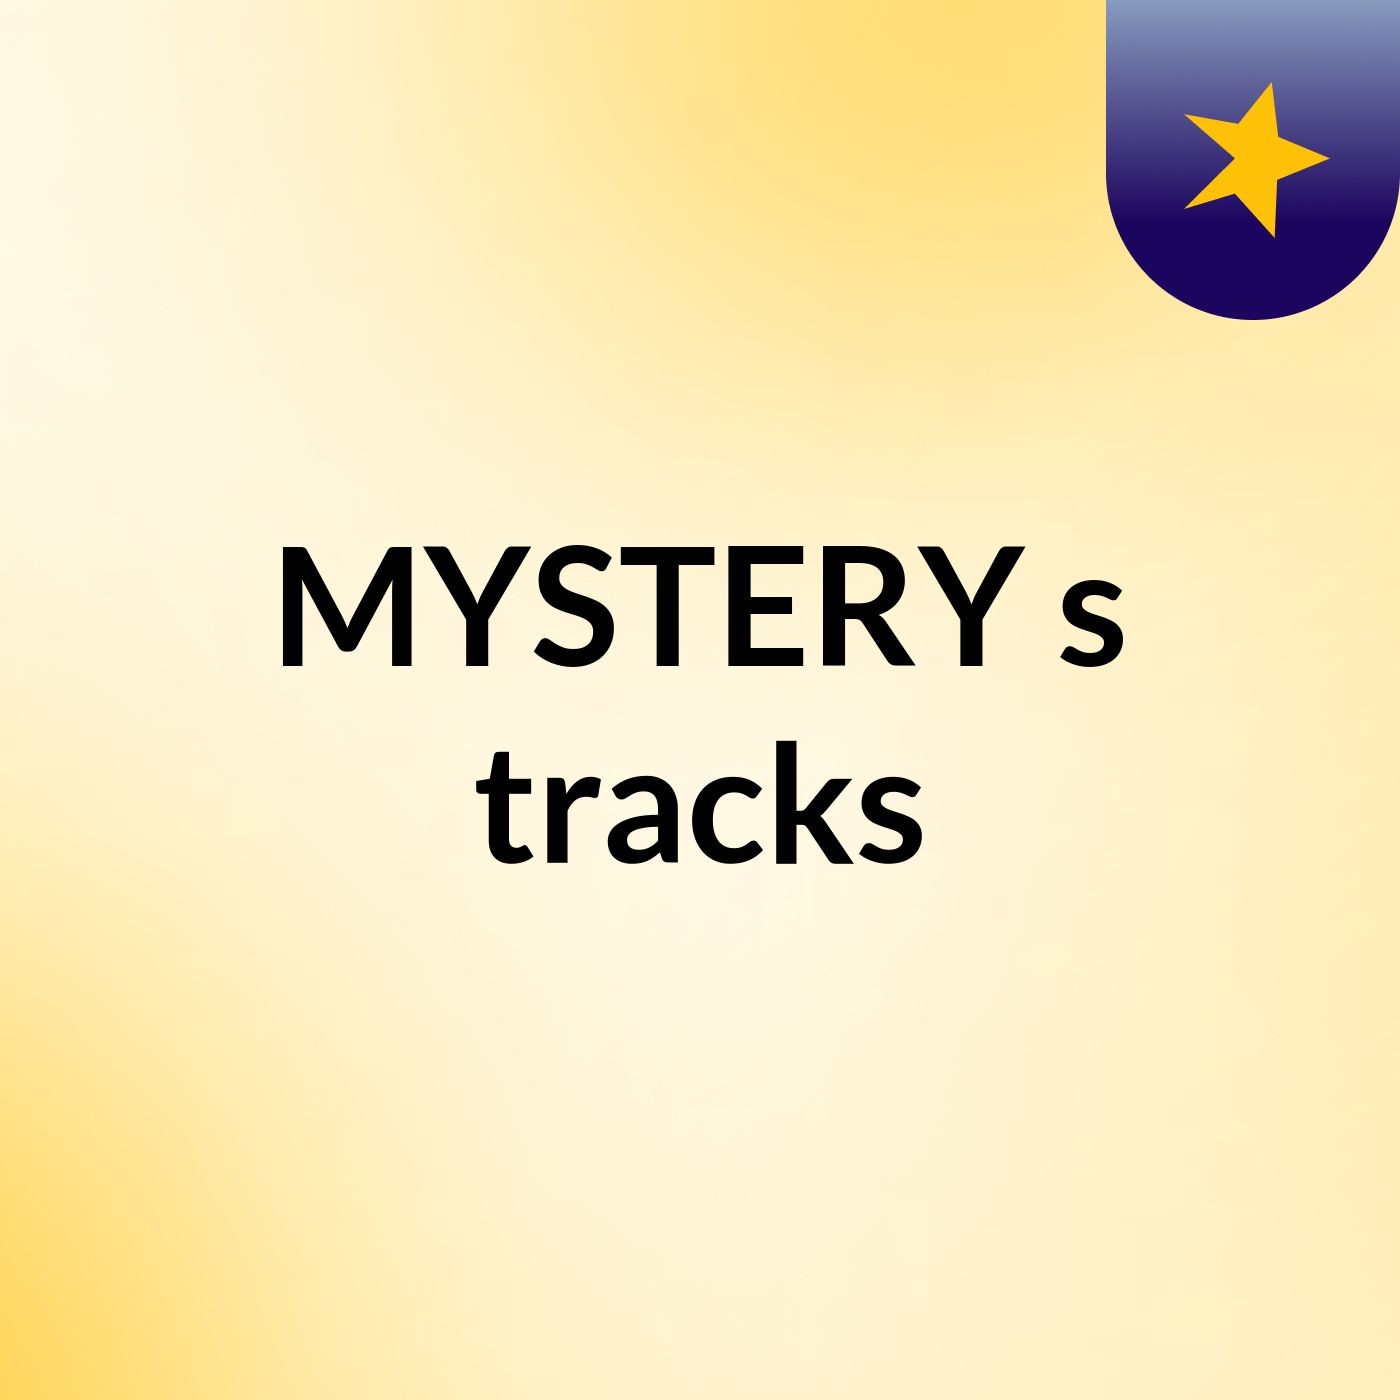 MYSTERY's tracks